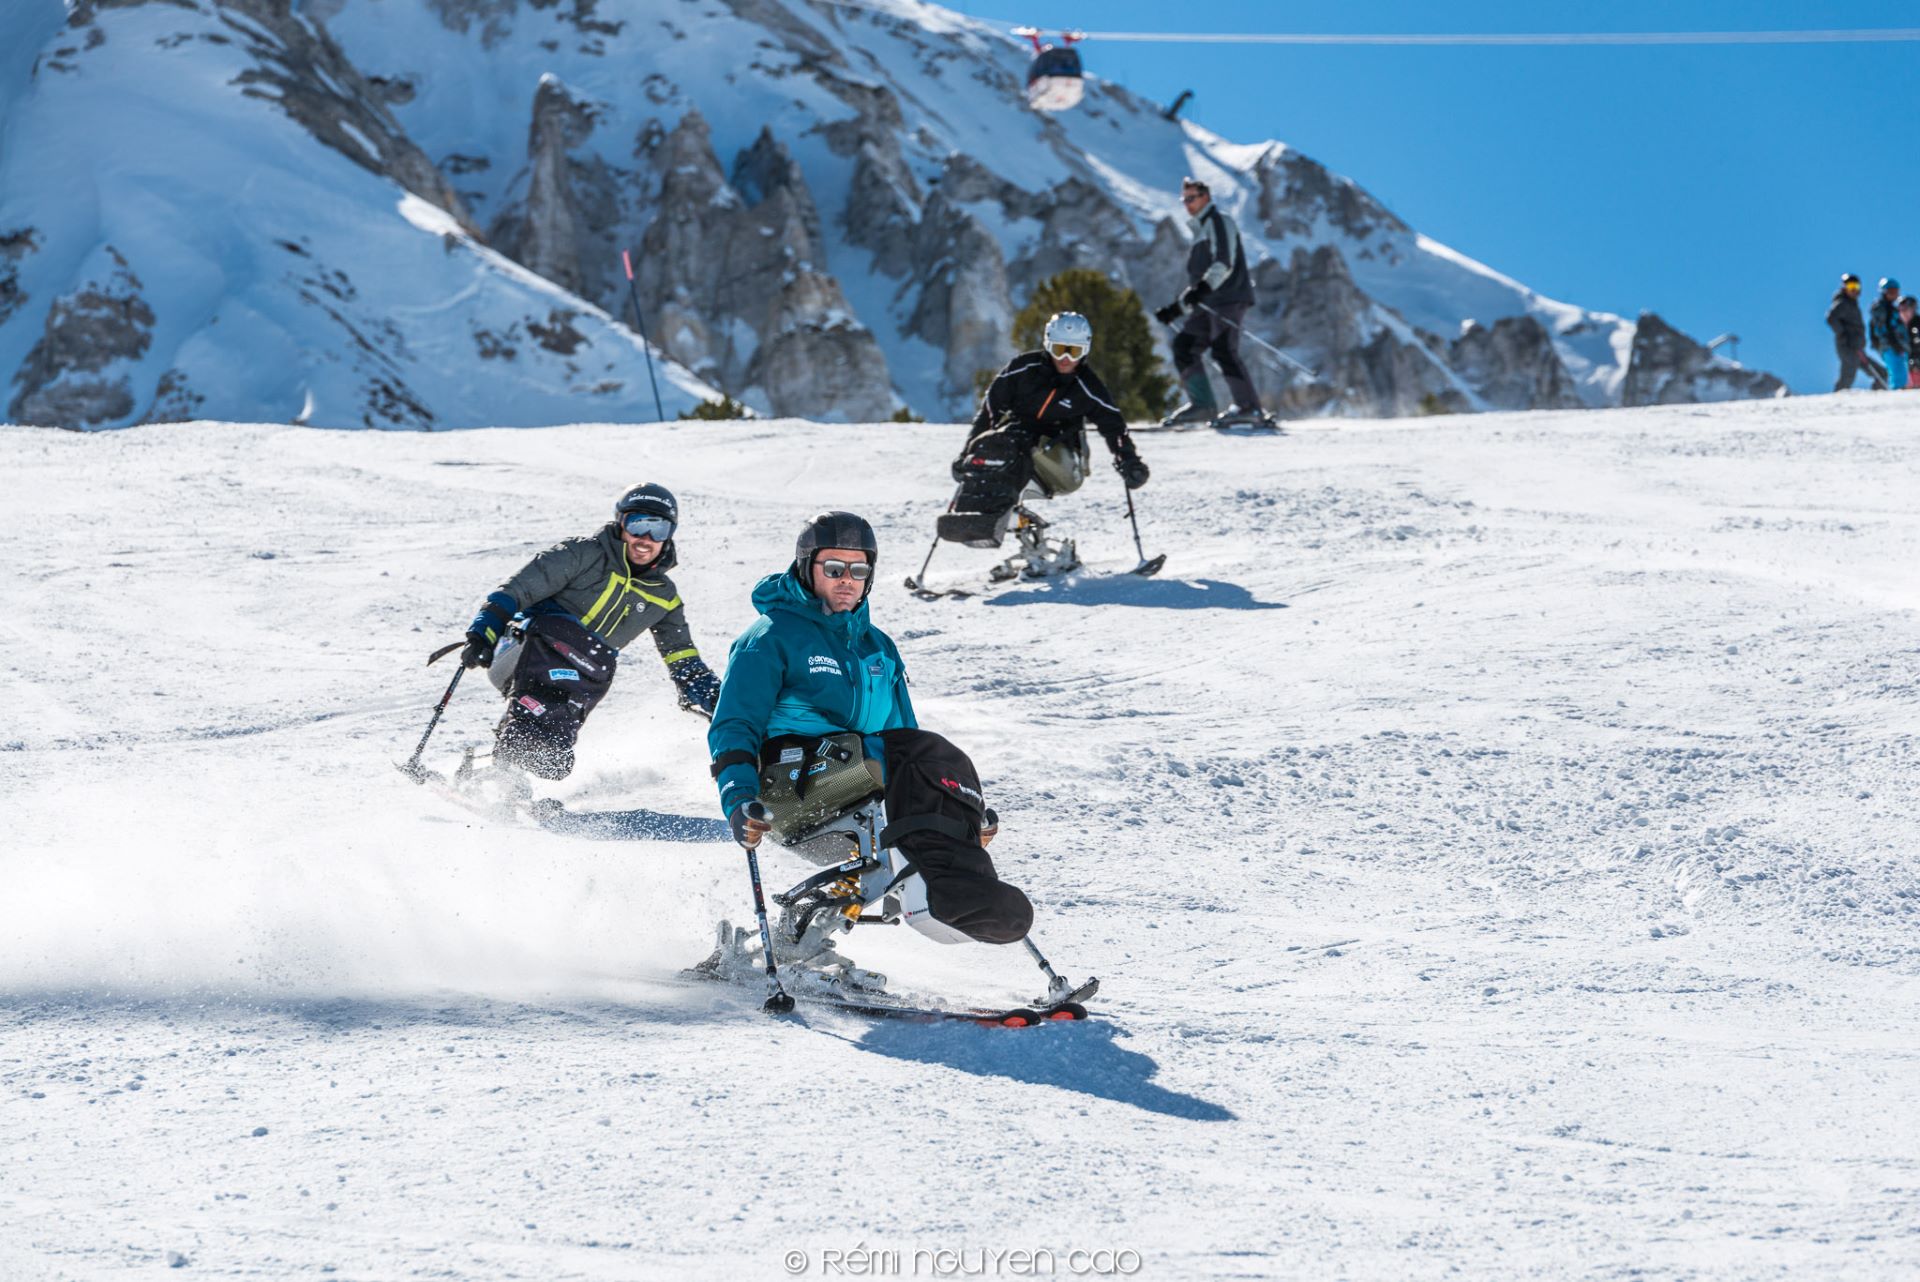 Cours-ski-siege-handiski-station-montagne-oxygene-ski-collection - © Oxygène ski